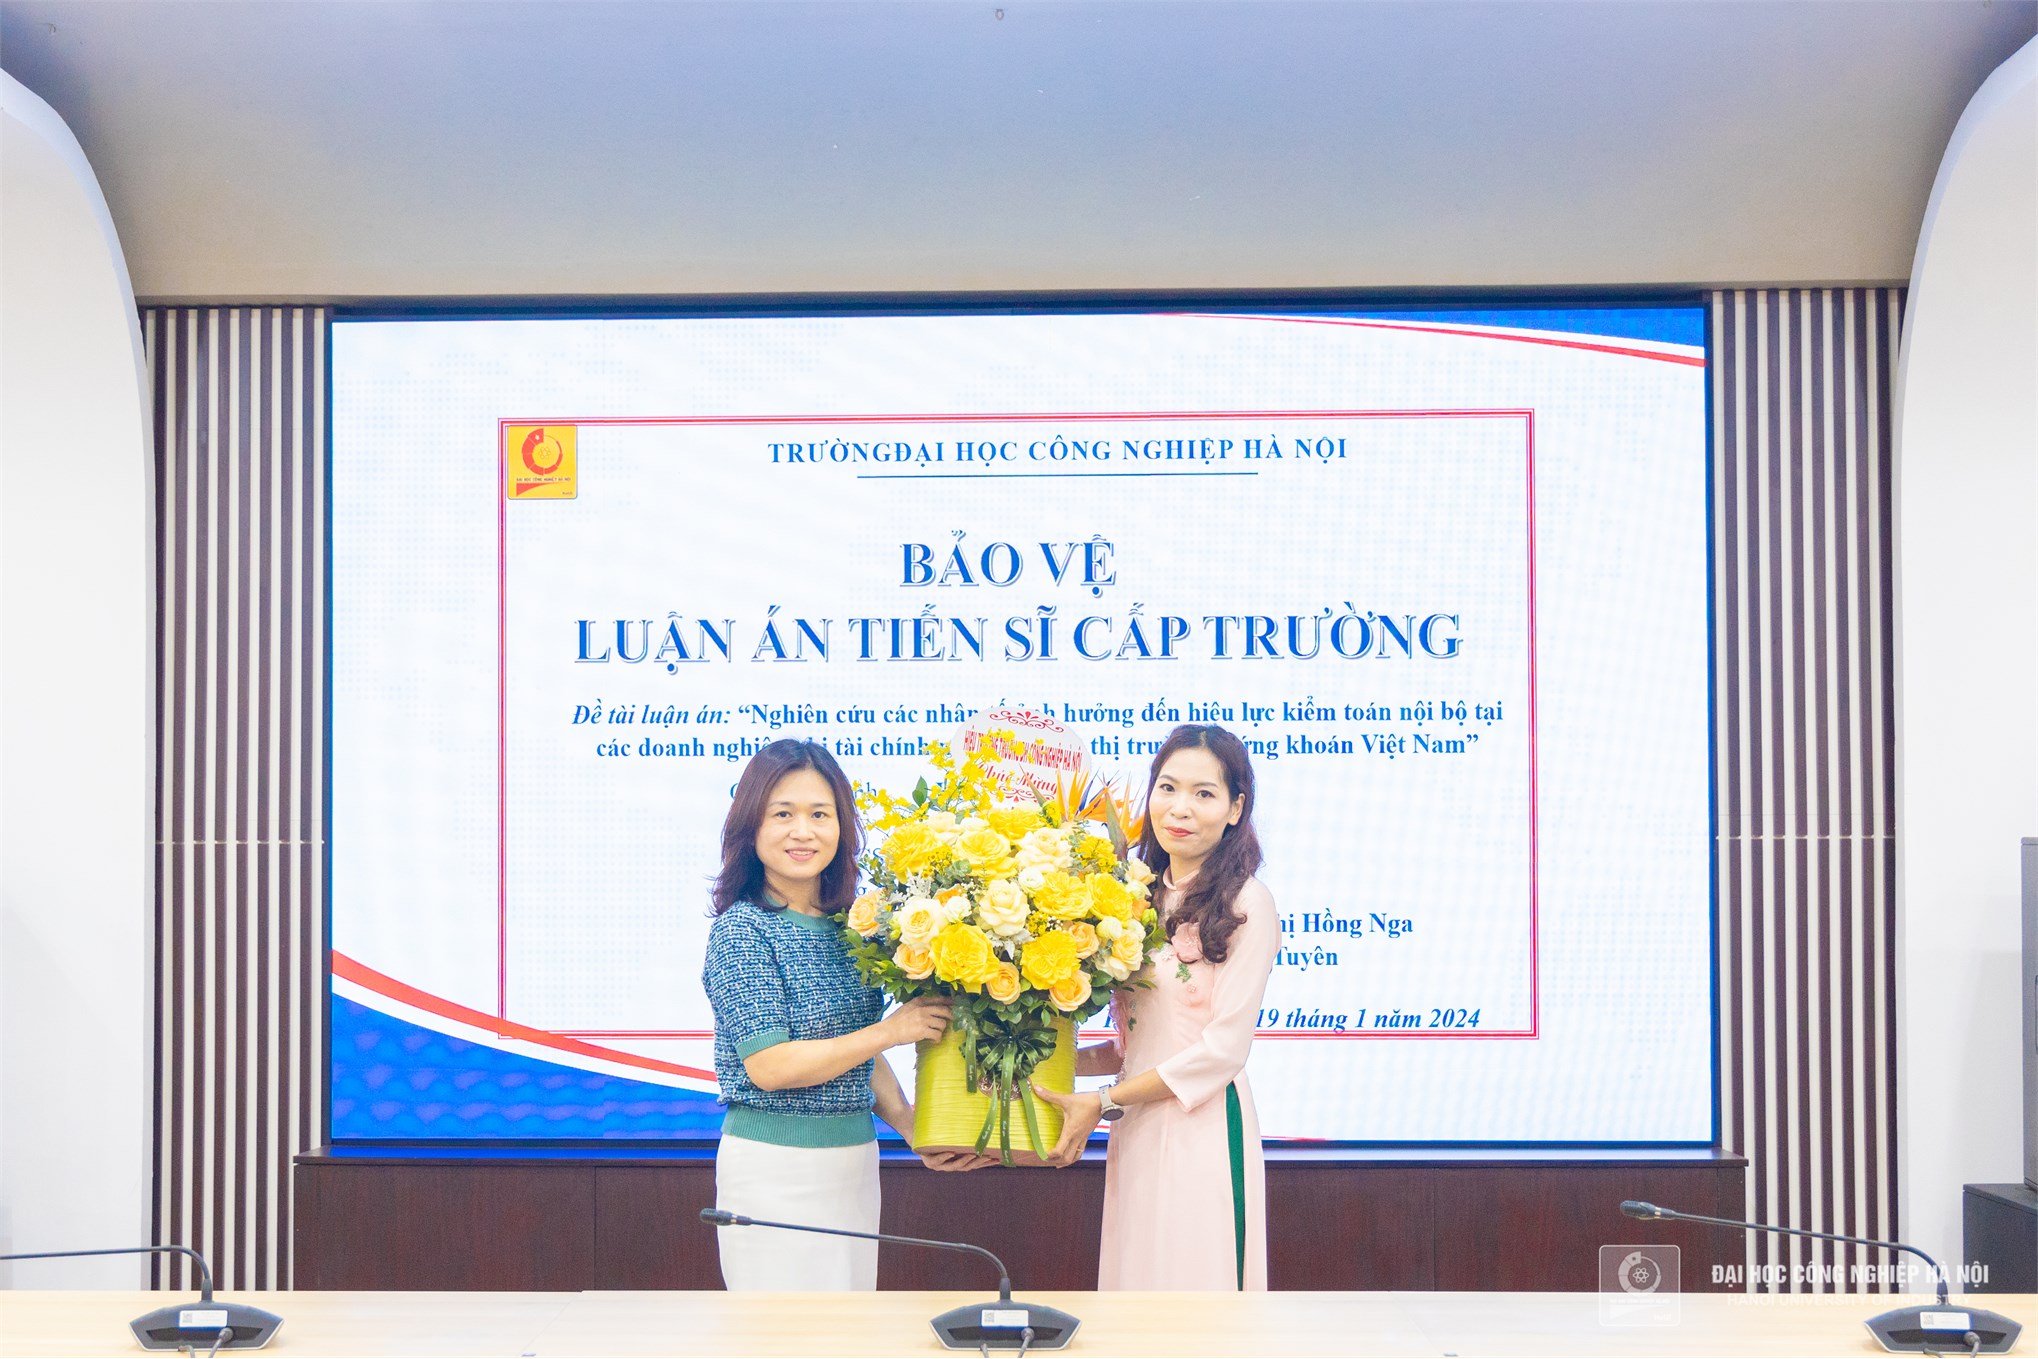 Chúc mừng NCS Nguyễn Thị Dự bảo vệ thành công luận án tiến sĩ cấp trường - chuyên ngành Kế toán.